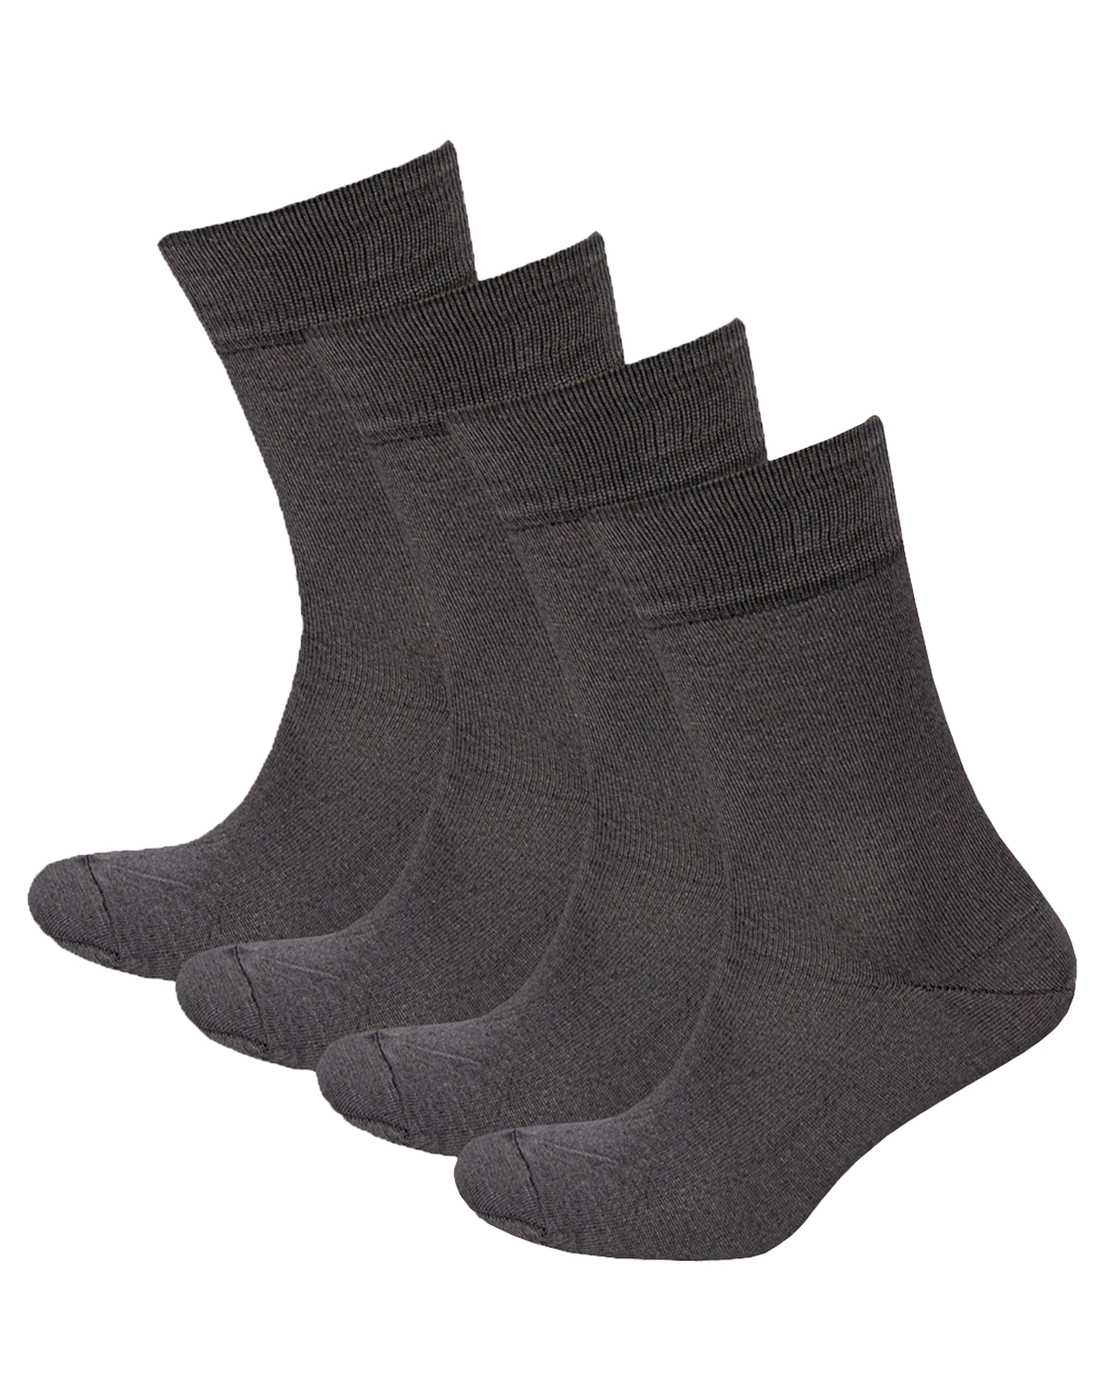 Комплект носков мужских Status Классические из хлопка серых 27, 4 пары